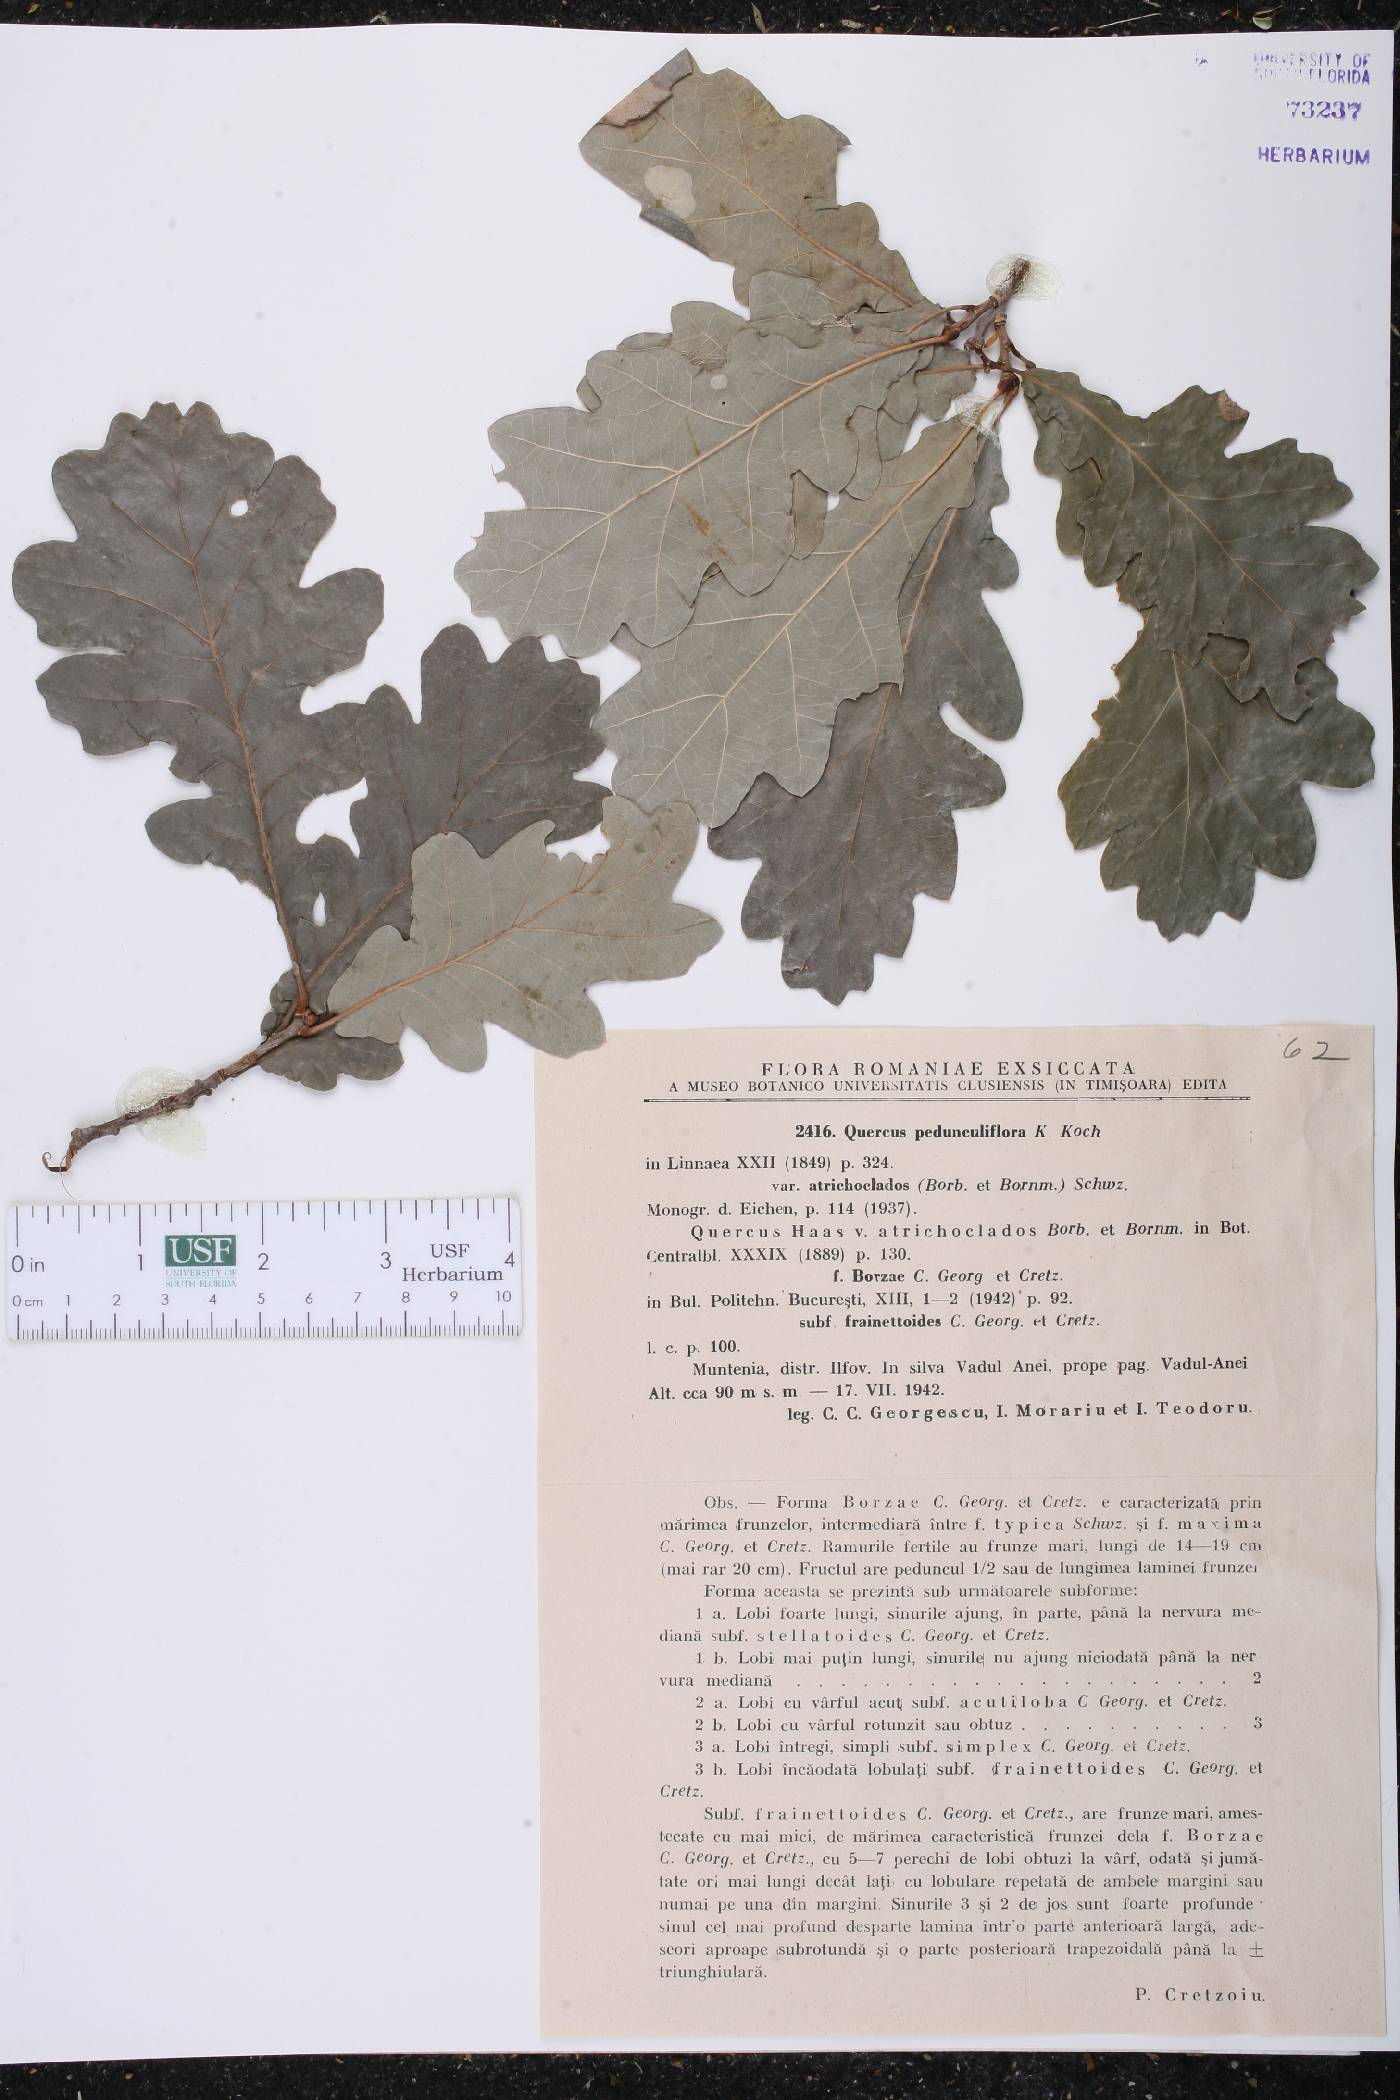 Quercus robur subsp. pedunculiflora image